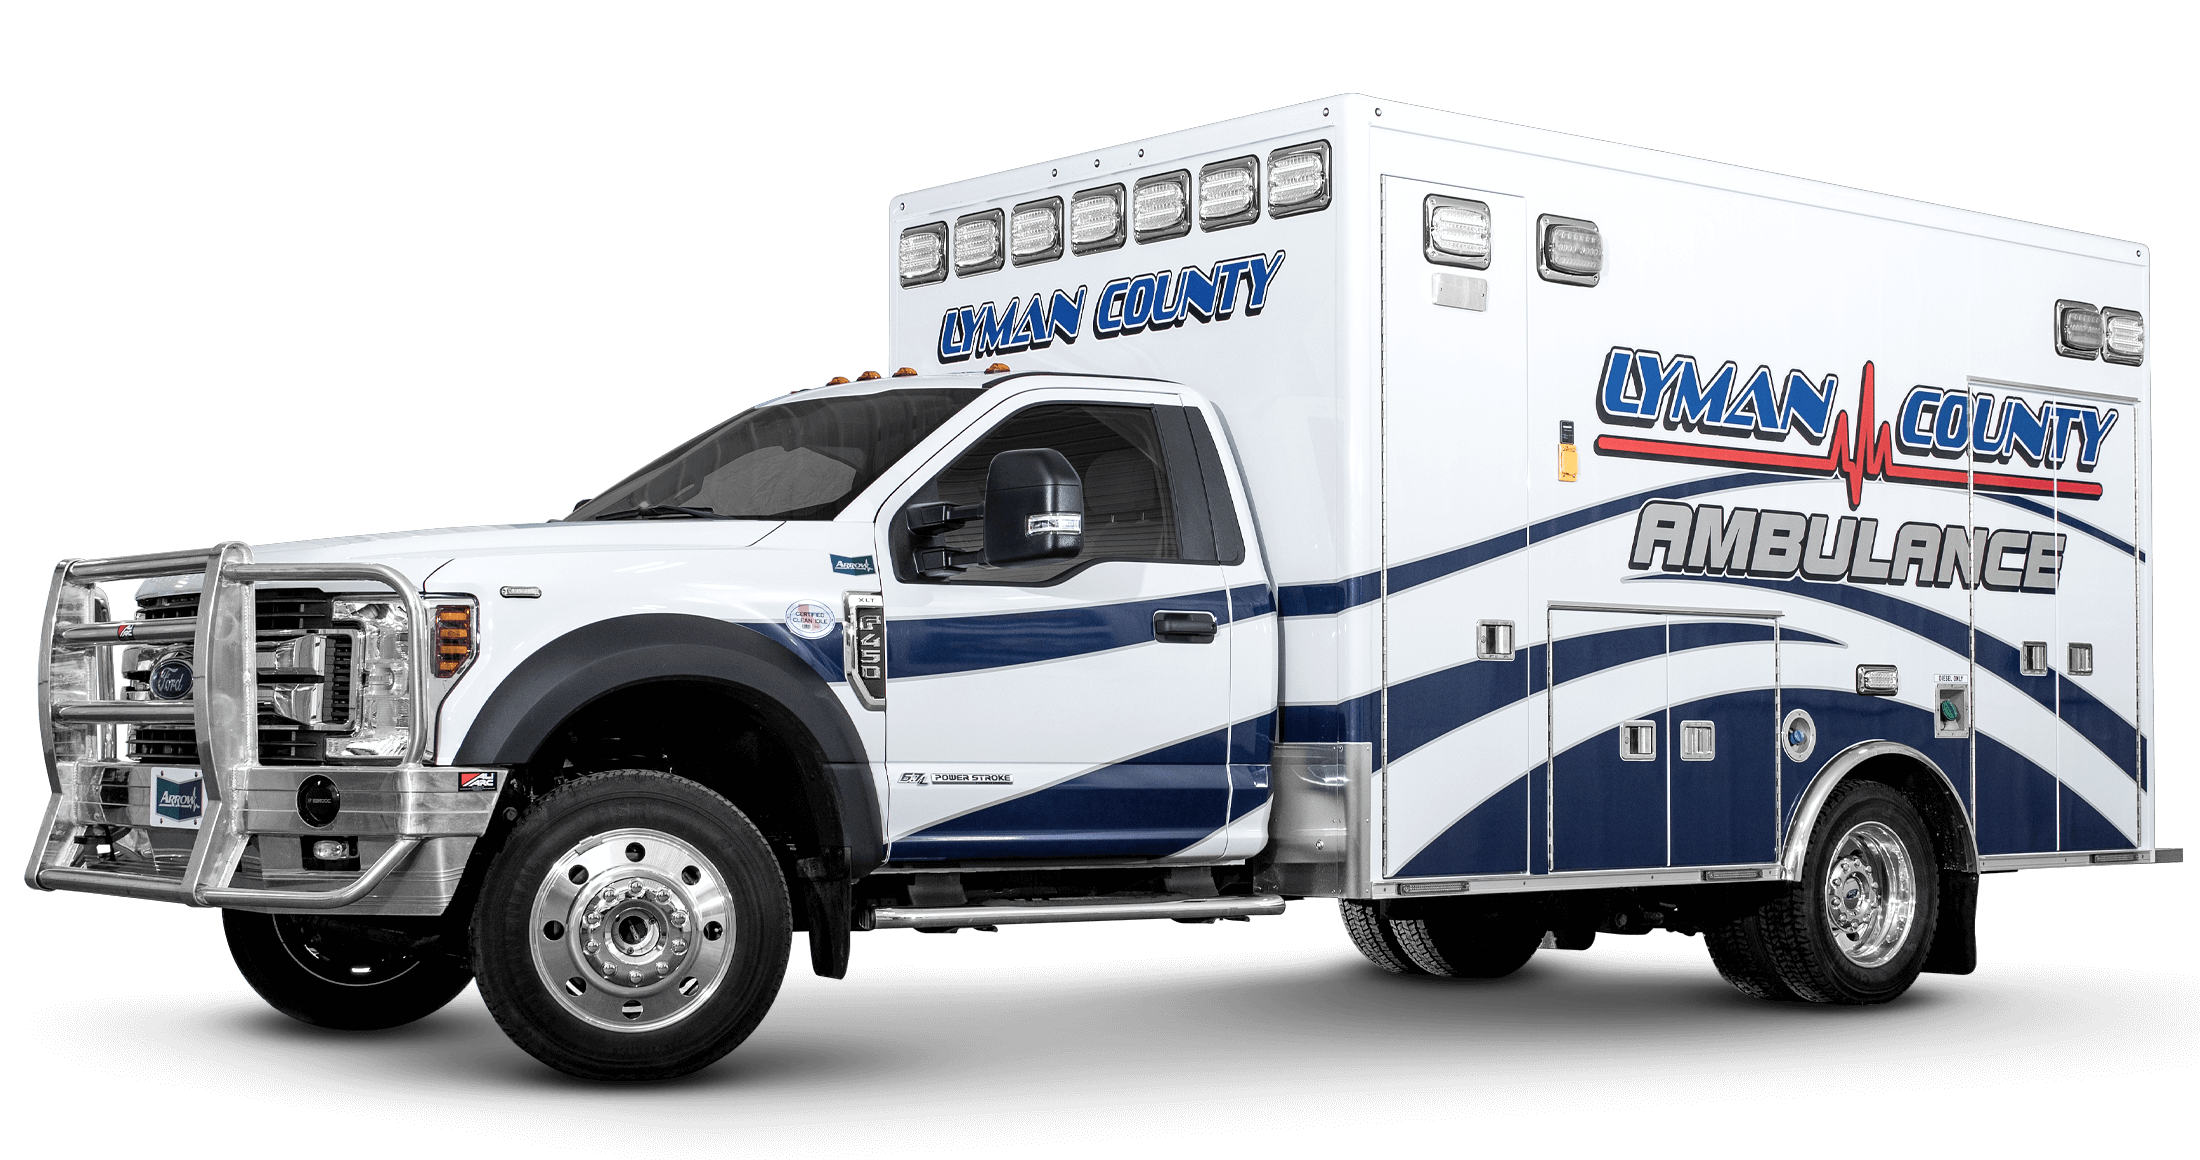 Lyman County Ambulance